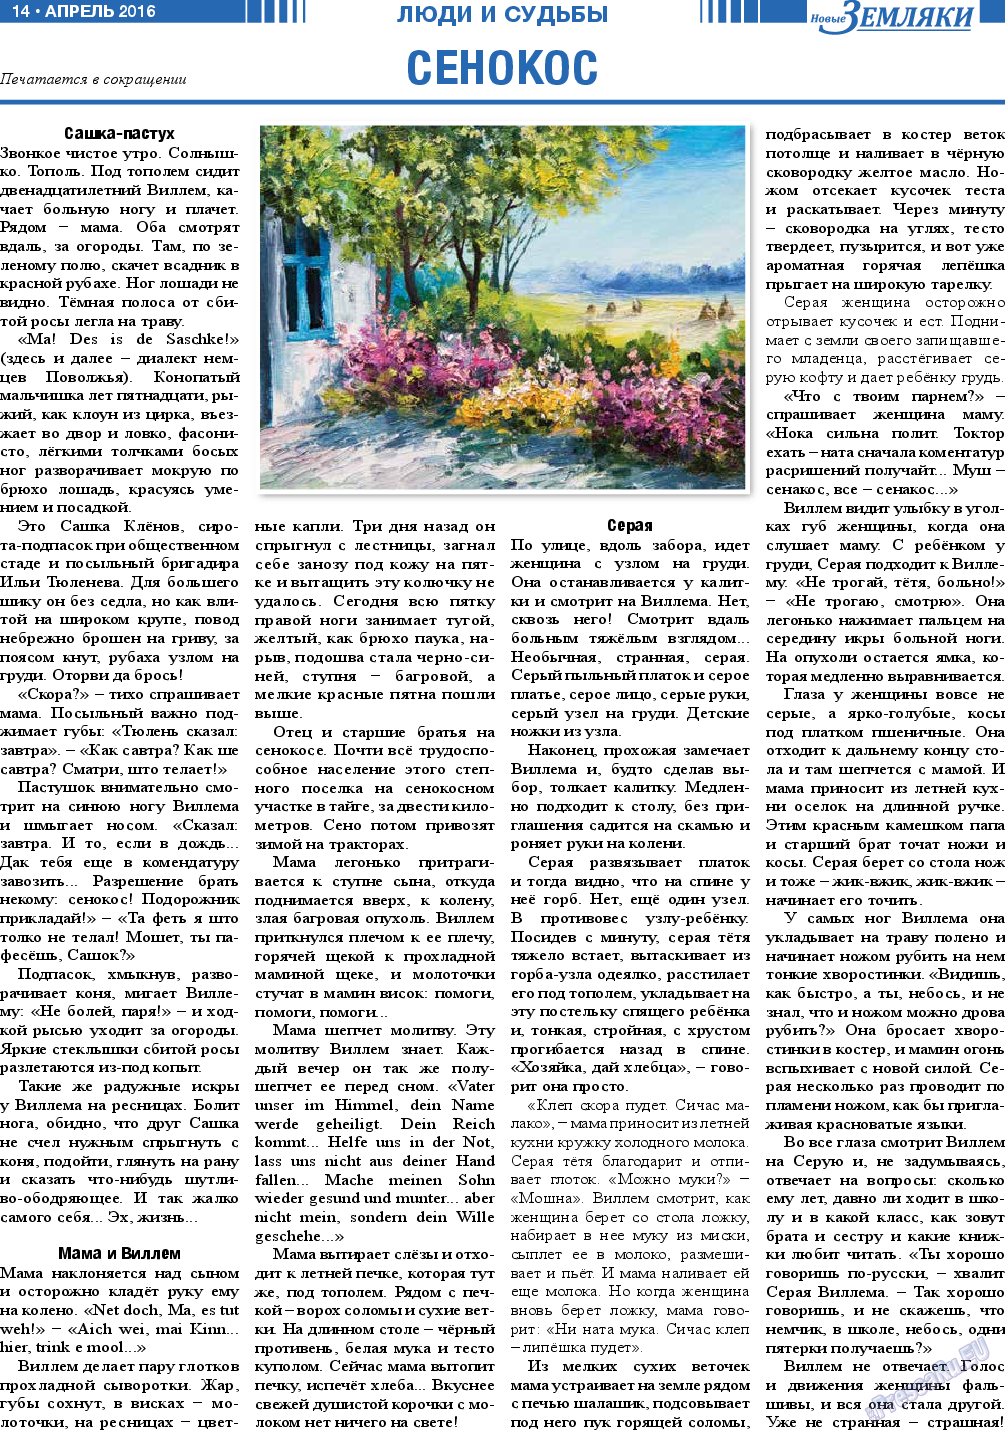 Новые Земляки (газета). 2016 год, номер 4, стр. 14